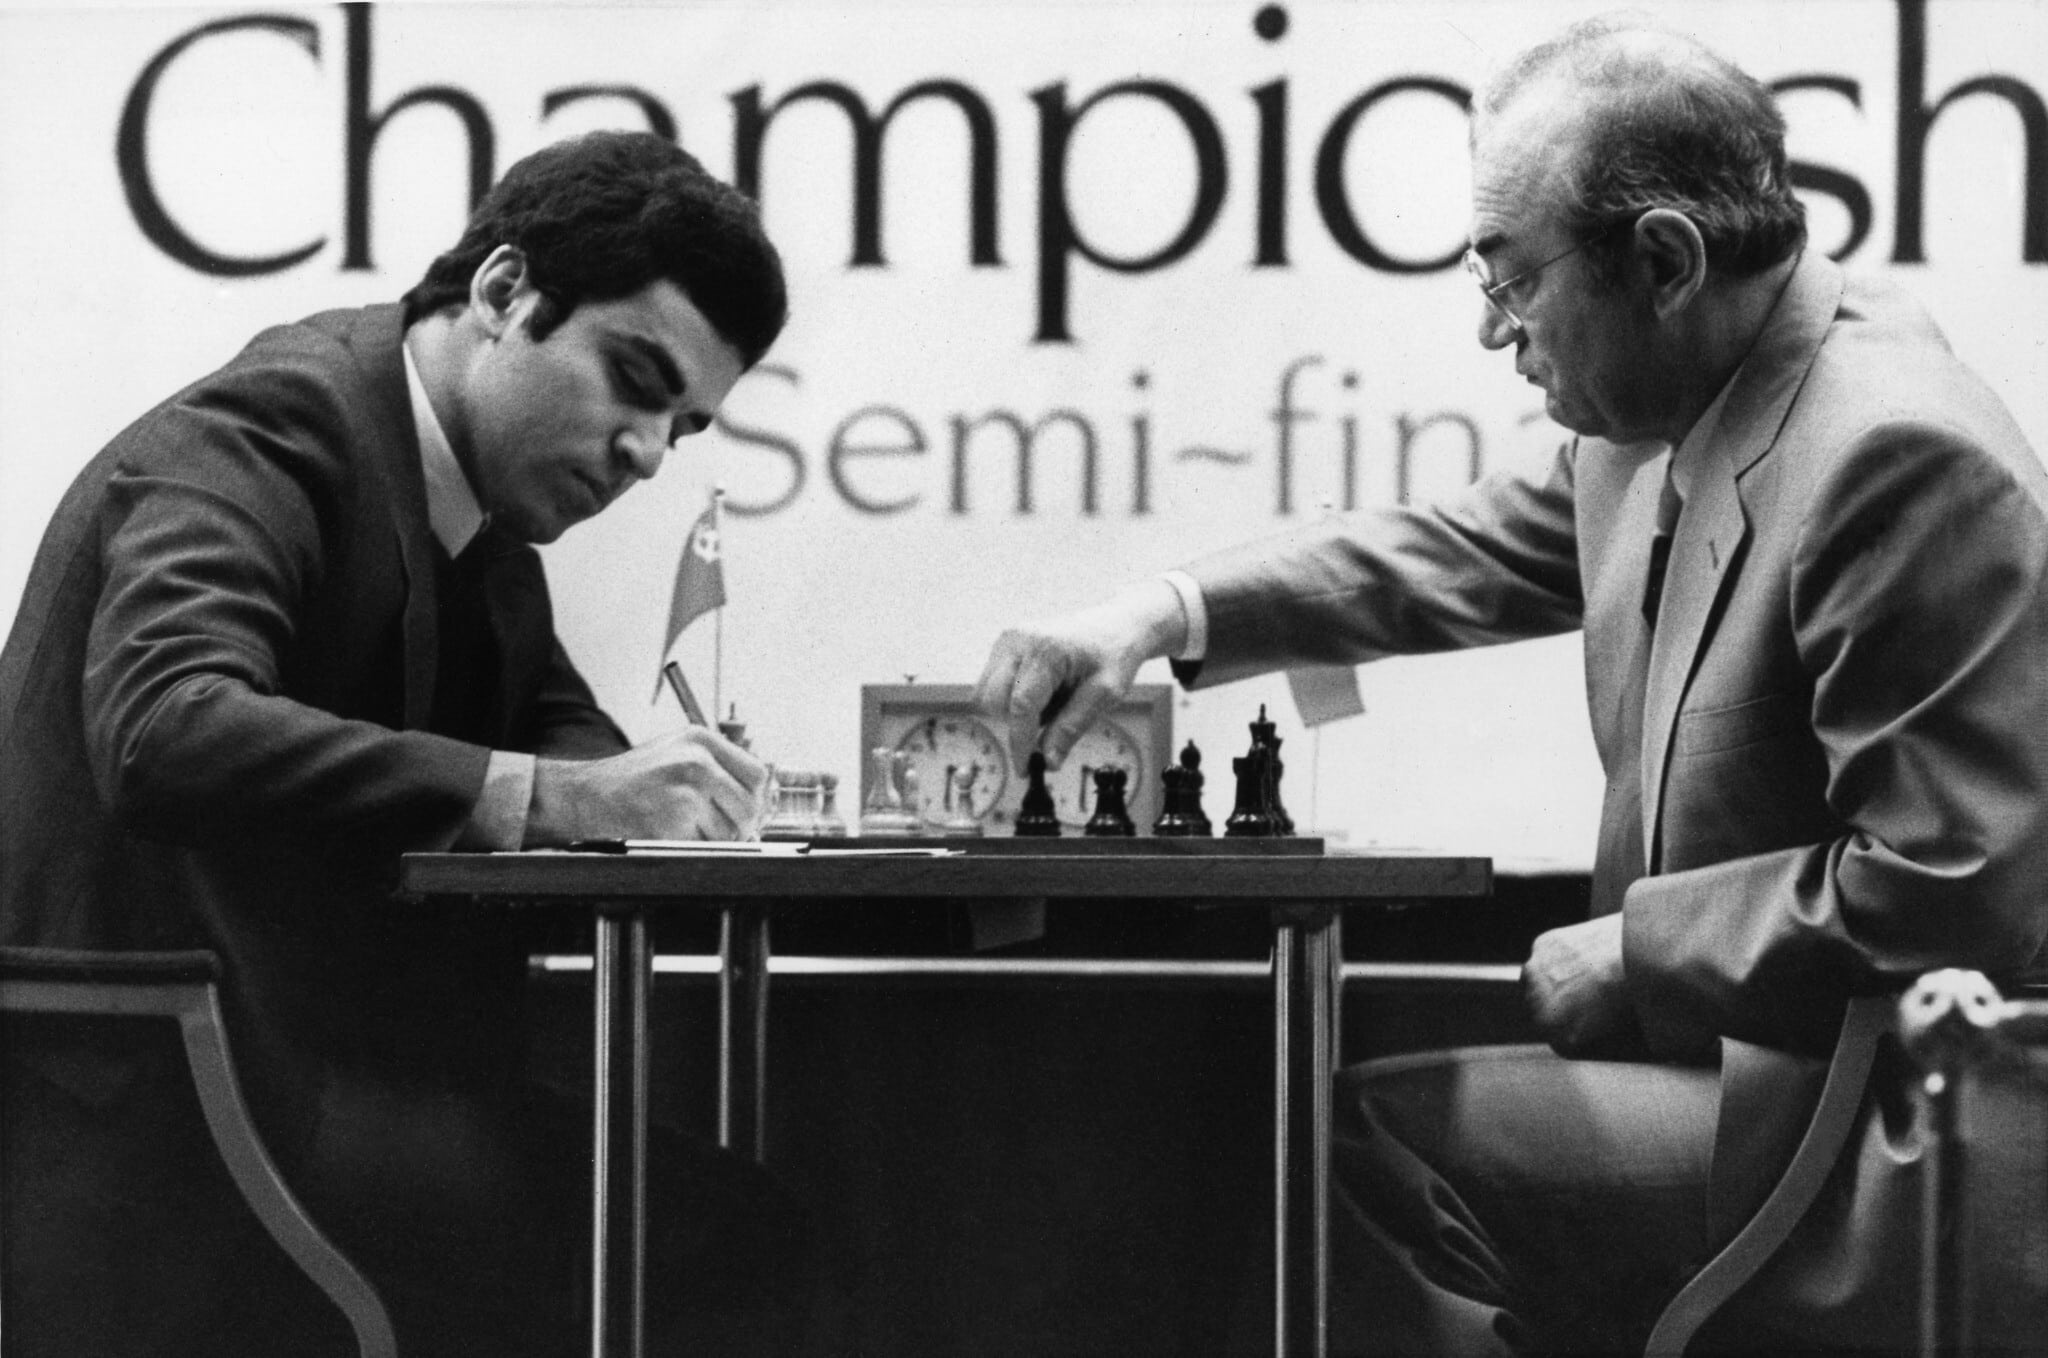 גארי קספרוב, בגיל 20, בחצי הגמר של אליפות העולם בשחמט שנערכה בלונדון, אנגליה, ב-25 בנובמבר 1983 (צילום: AP Photo/Taggart)